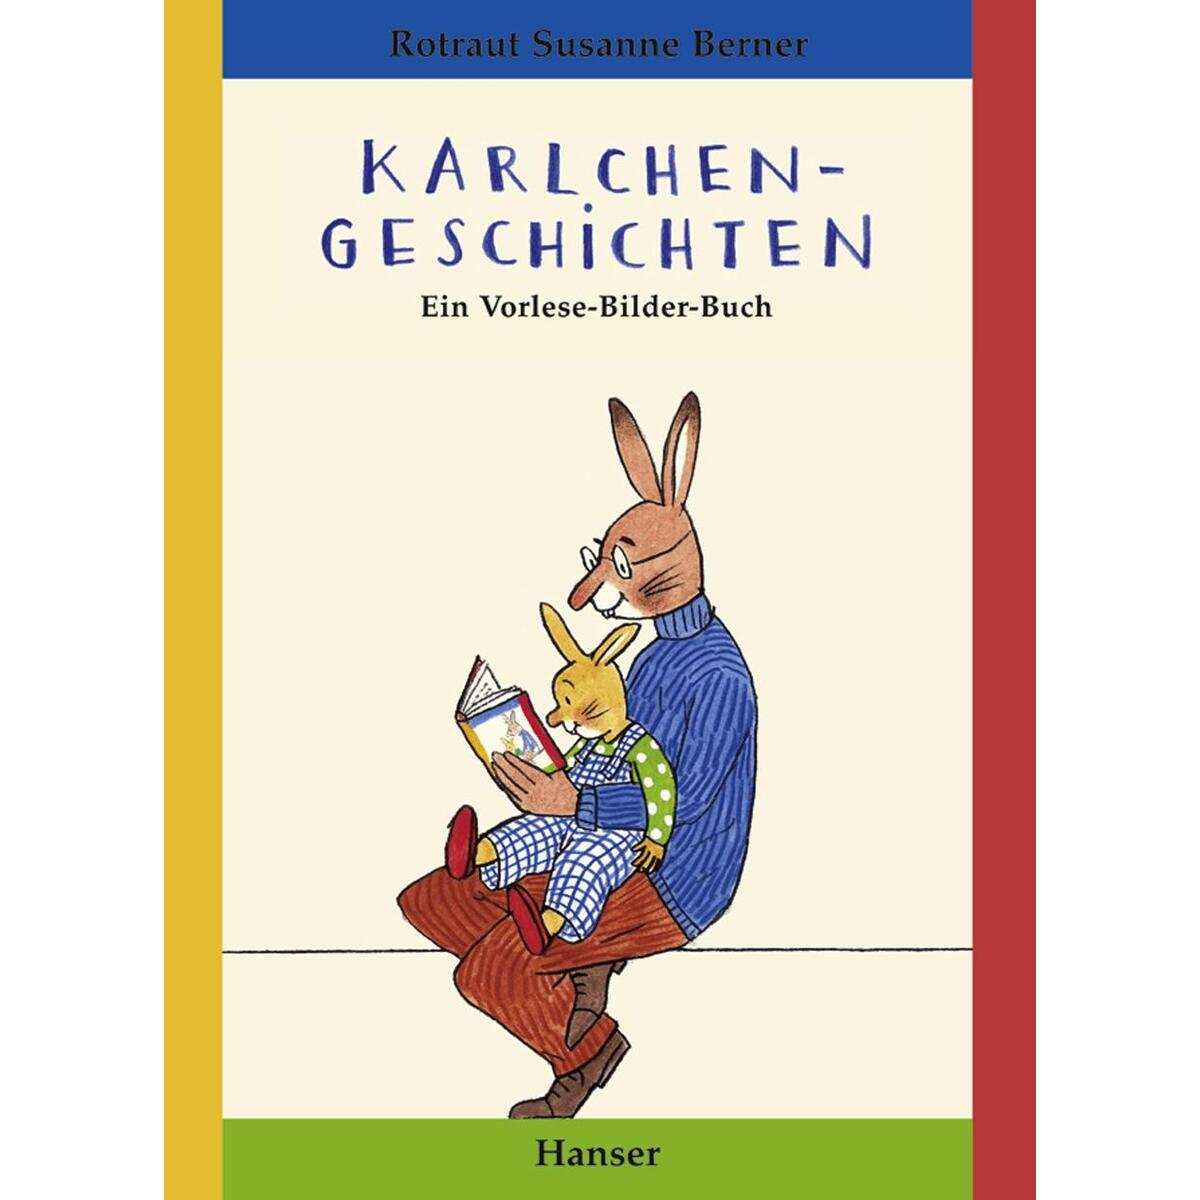 Karlchen-Geschichten von Carl Hanser Verlag